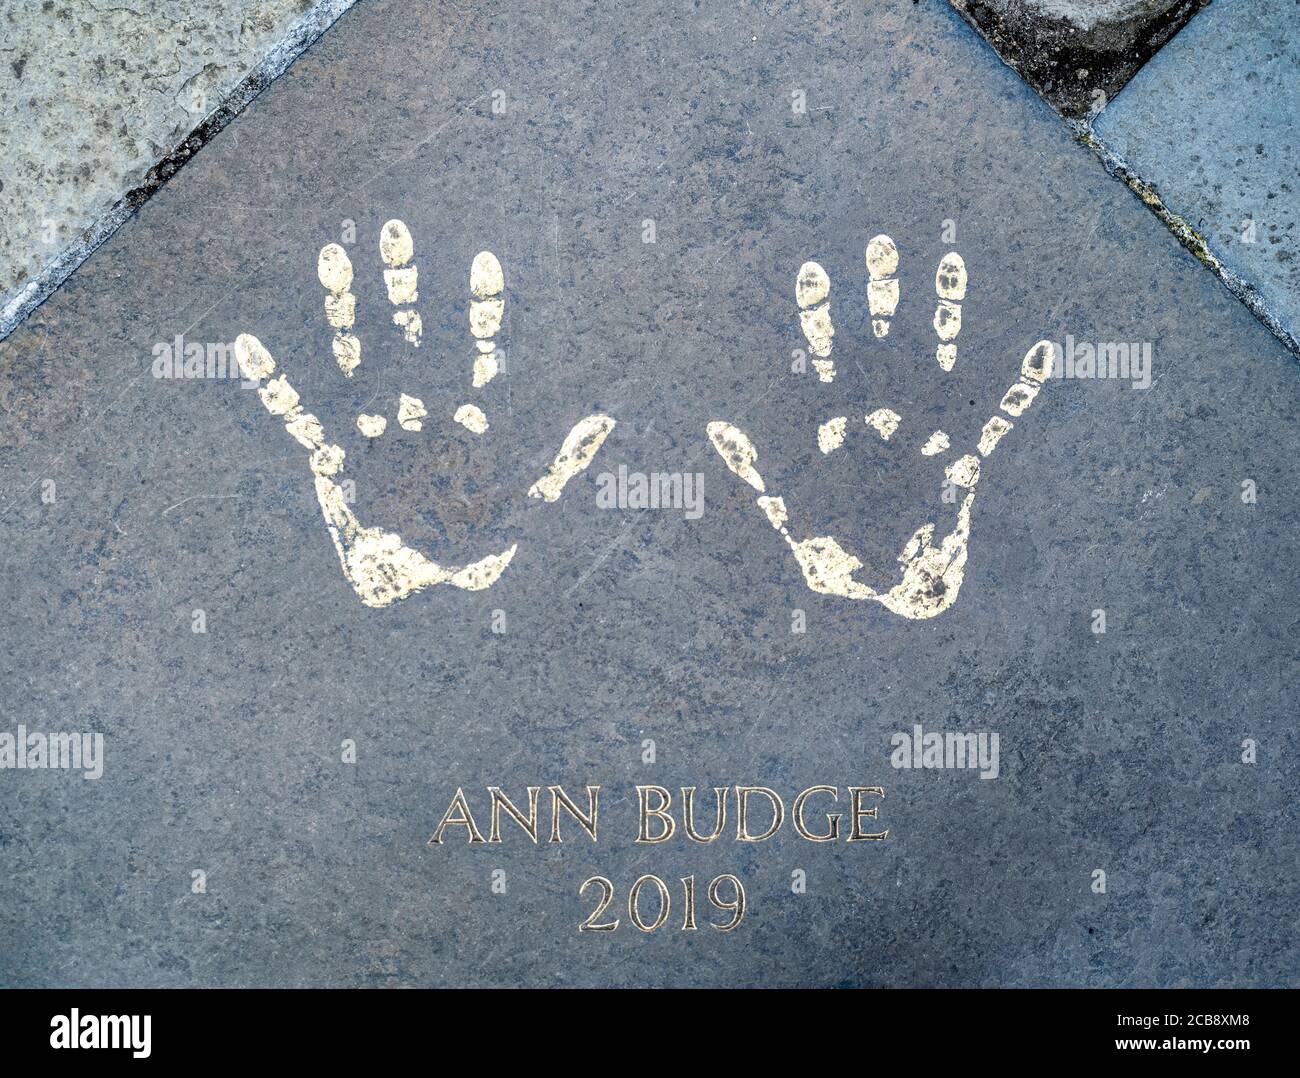 Die Handdrucke von Ann Budge, Besitzerin des Hearts FC, auf einem Plattenstein in den City Chambers, Edinburgh, war sie die Gewinnerin des Edinburgh Award 2019. Stockfoto